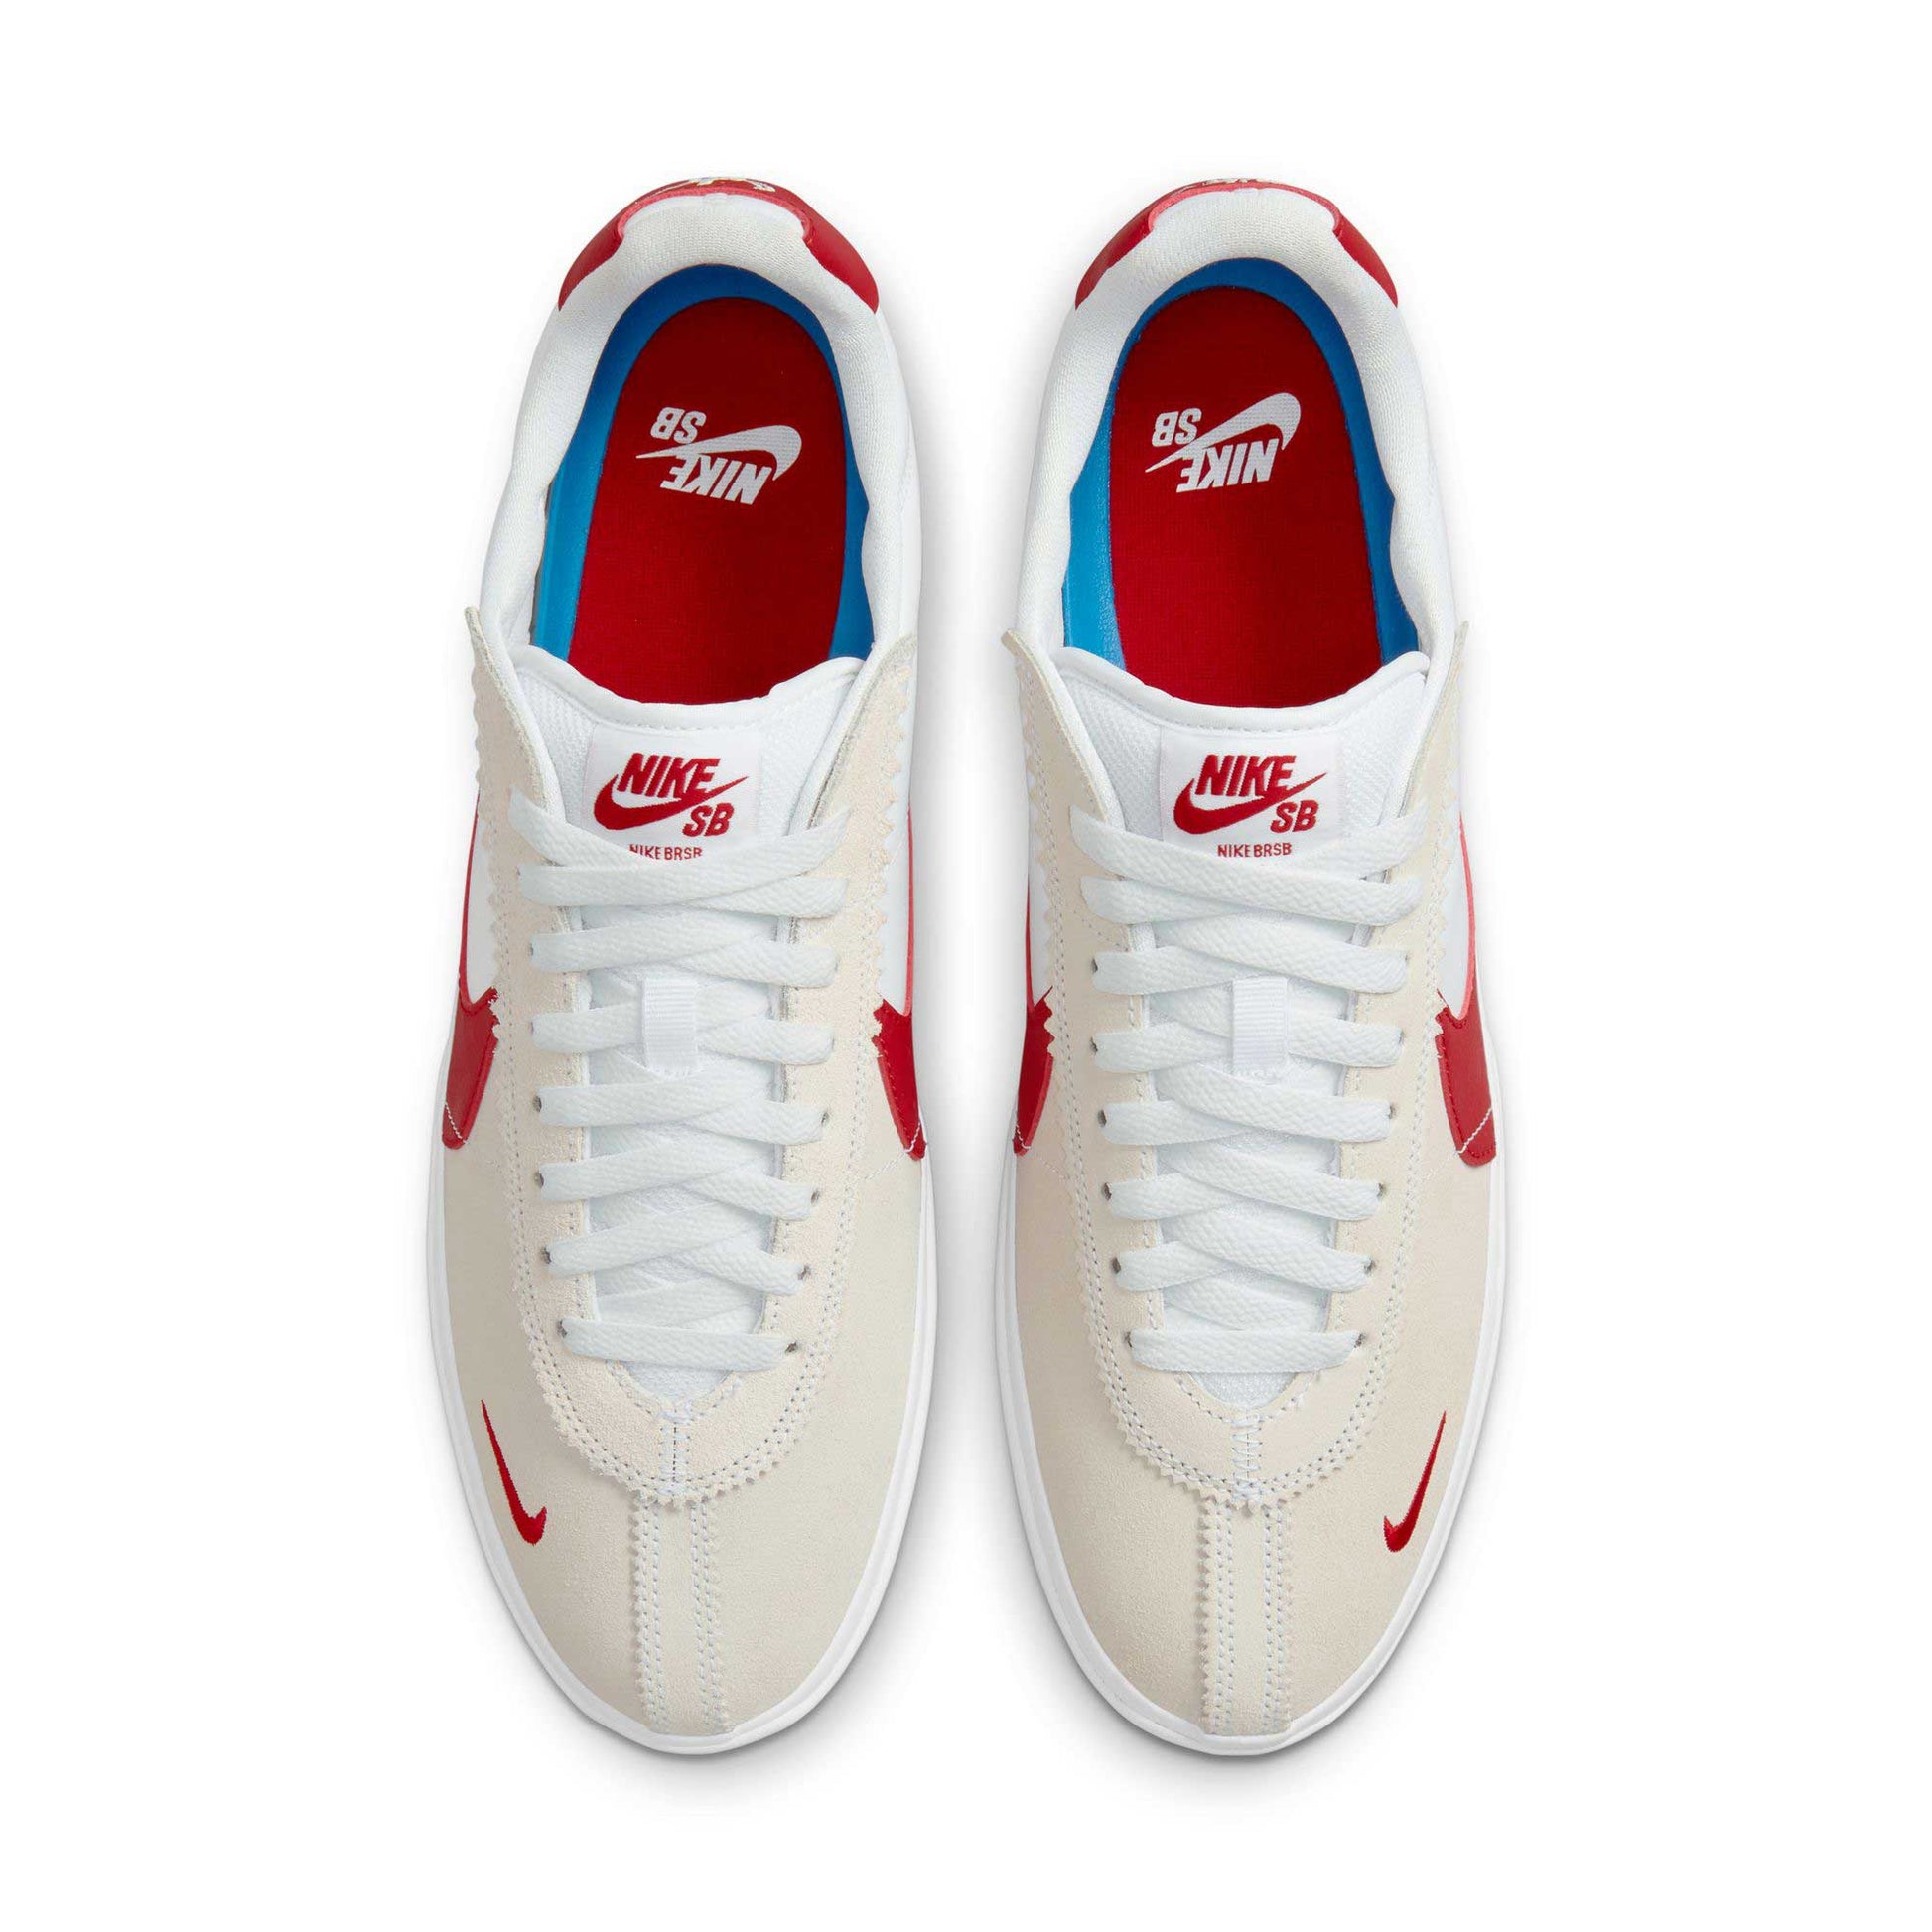 Nike SB BRSB, white/varsity red-varsity royal-white - Tiki Room Skateboards - 5